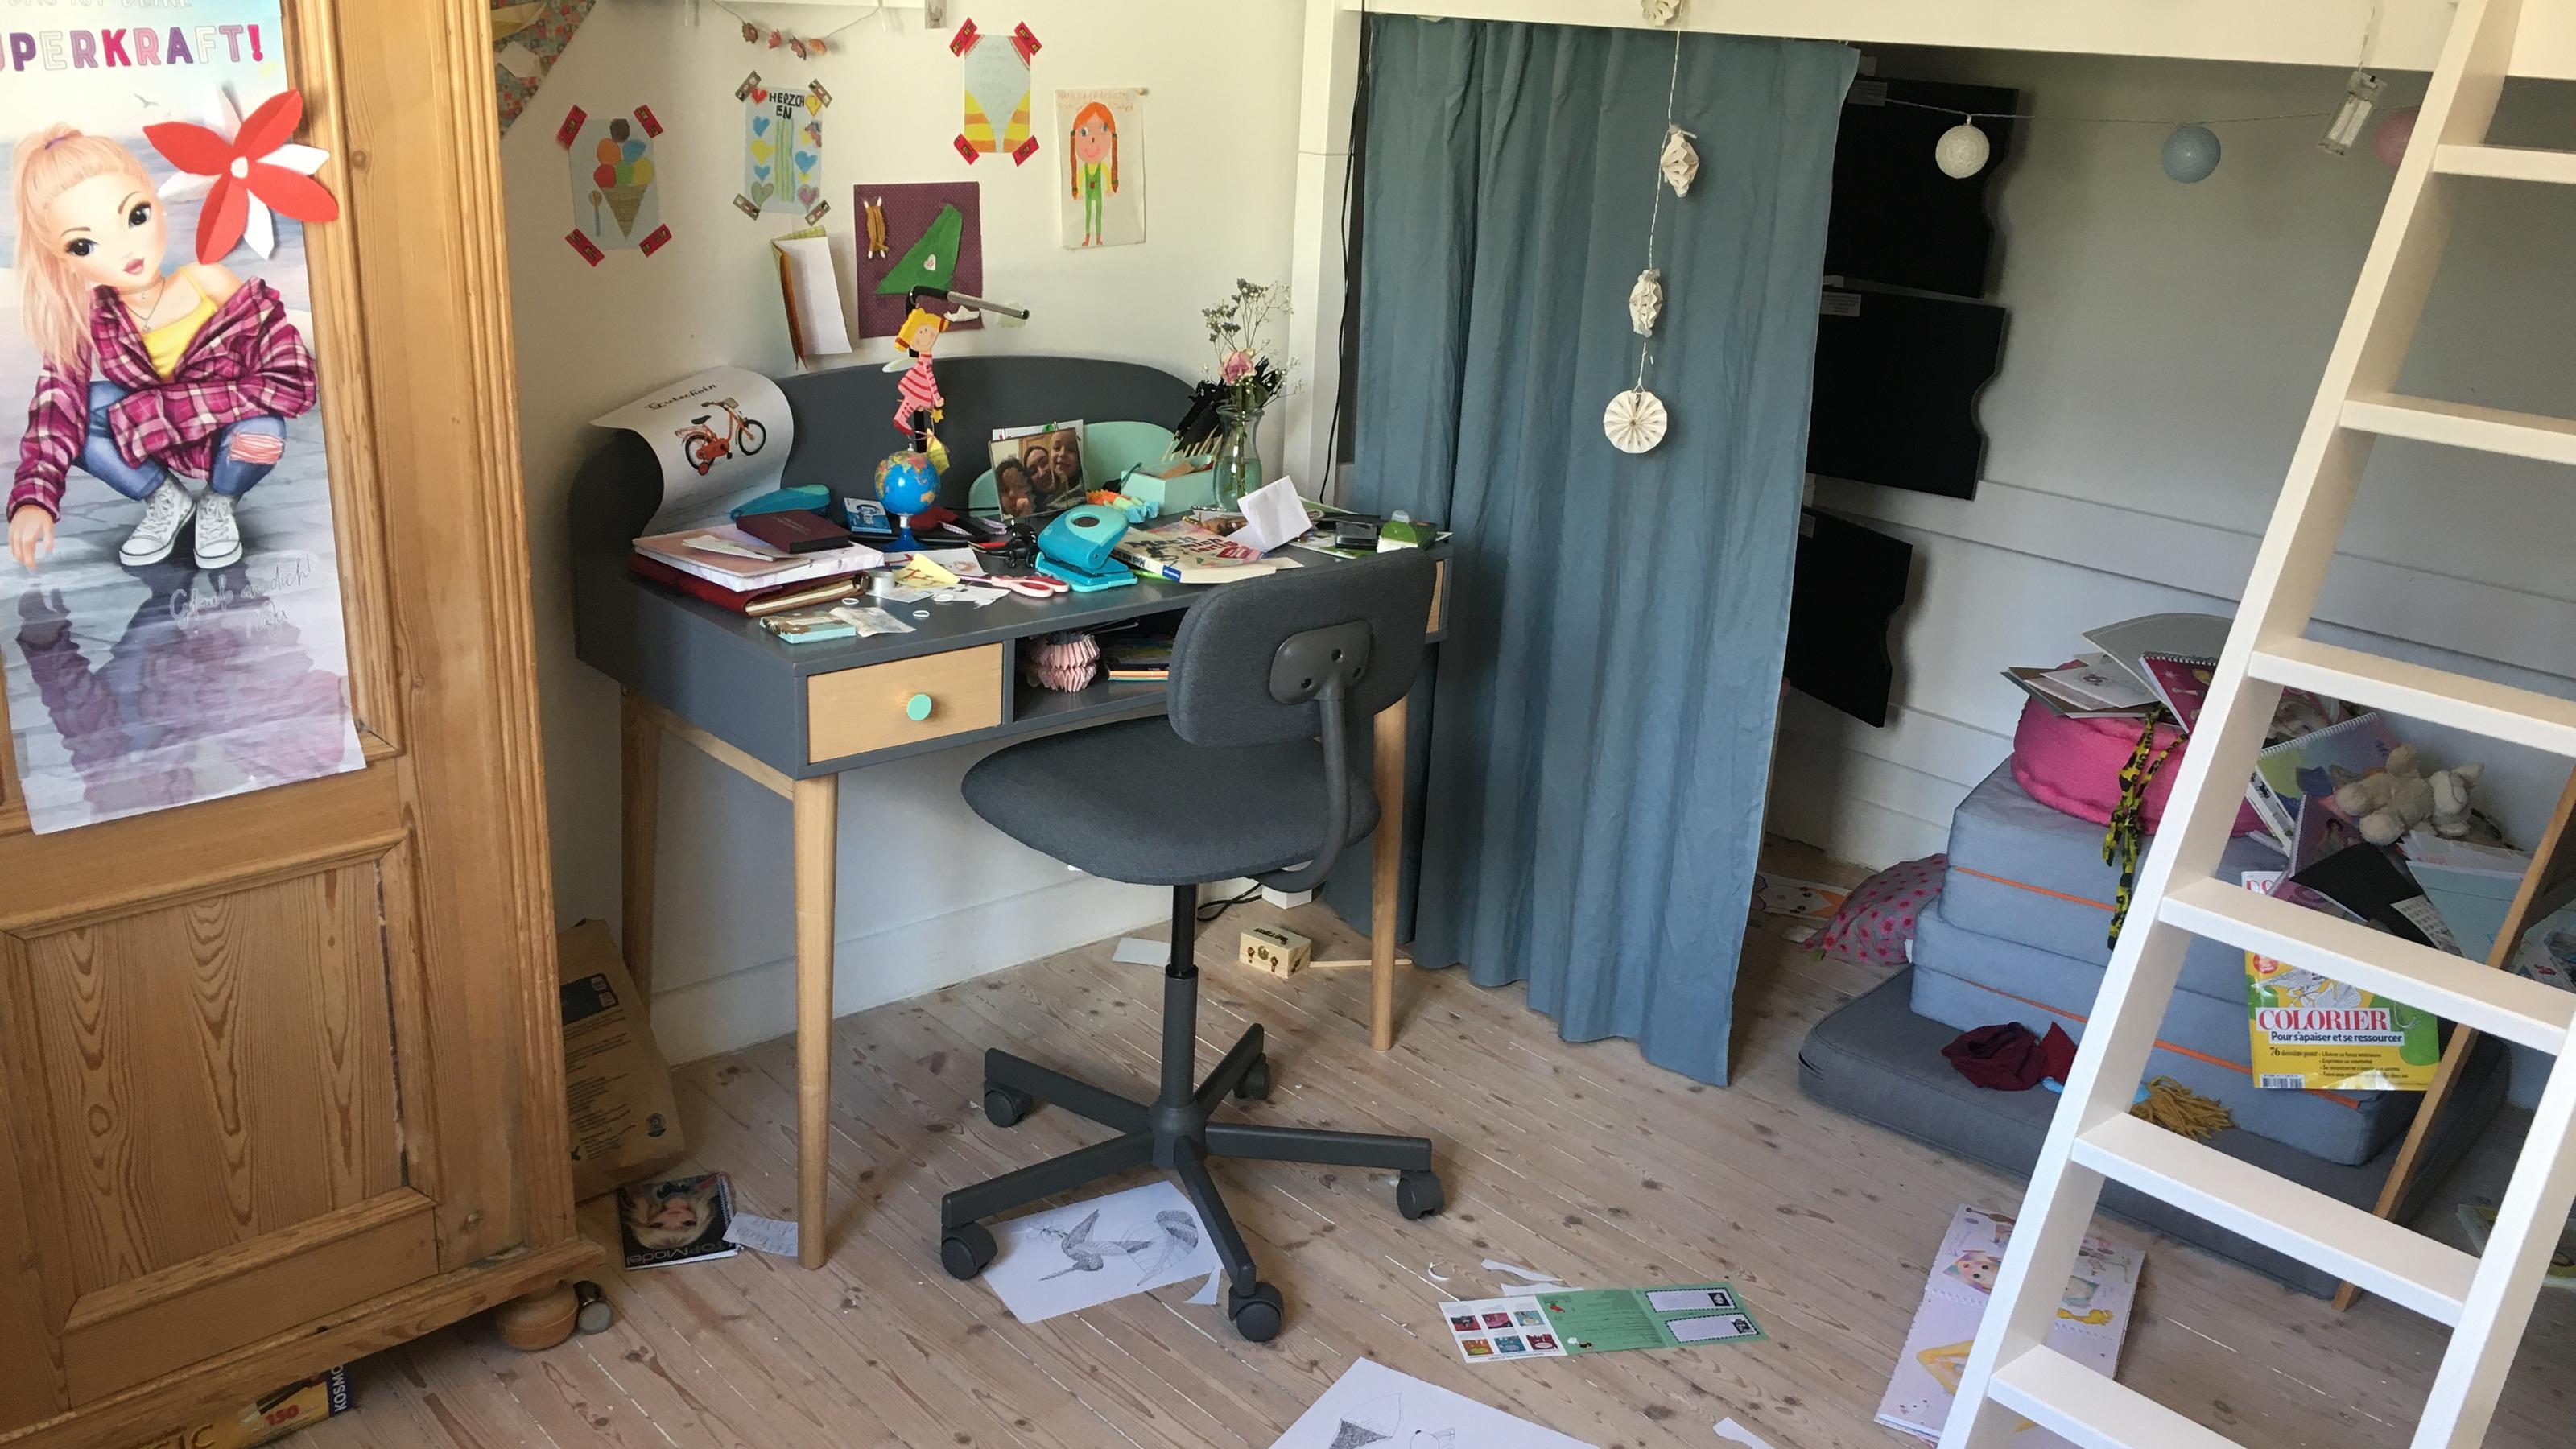 Unaufgeräumtes Kinderzimmer vor dem Speed Cleaning